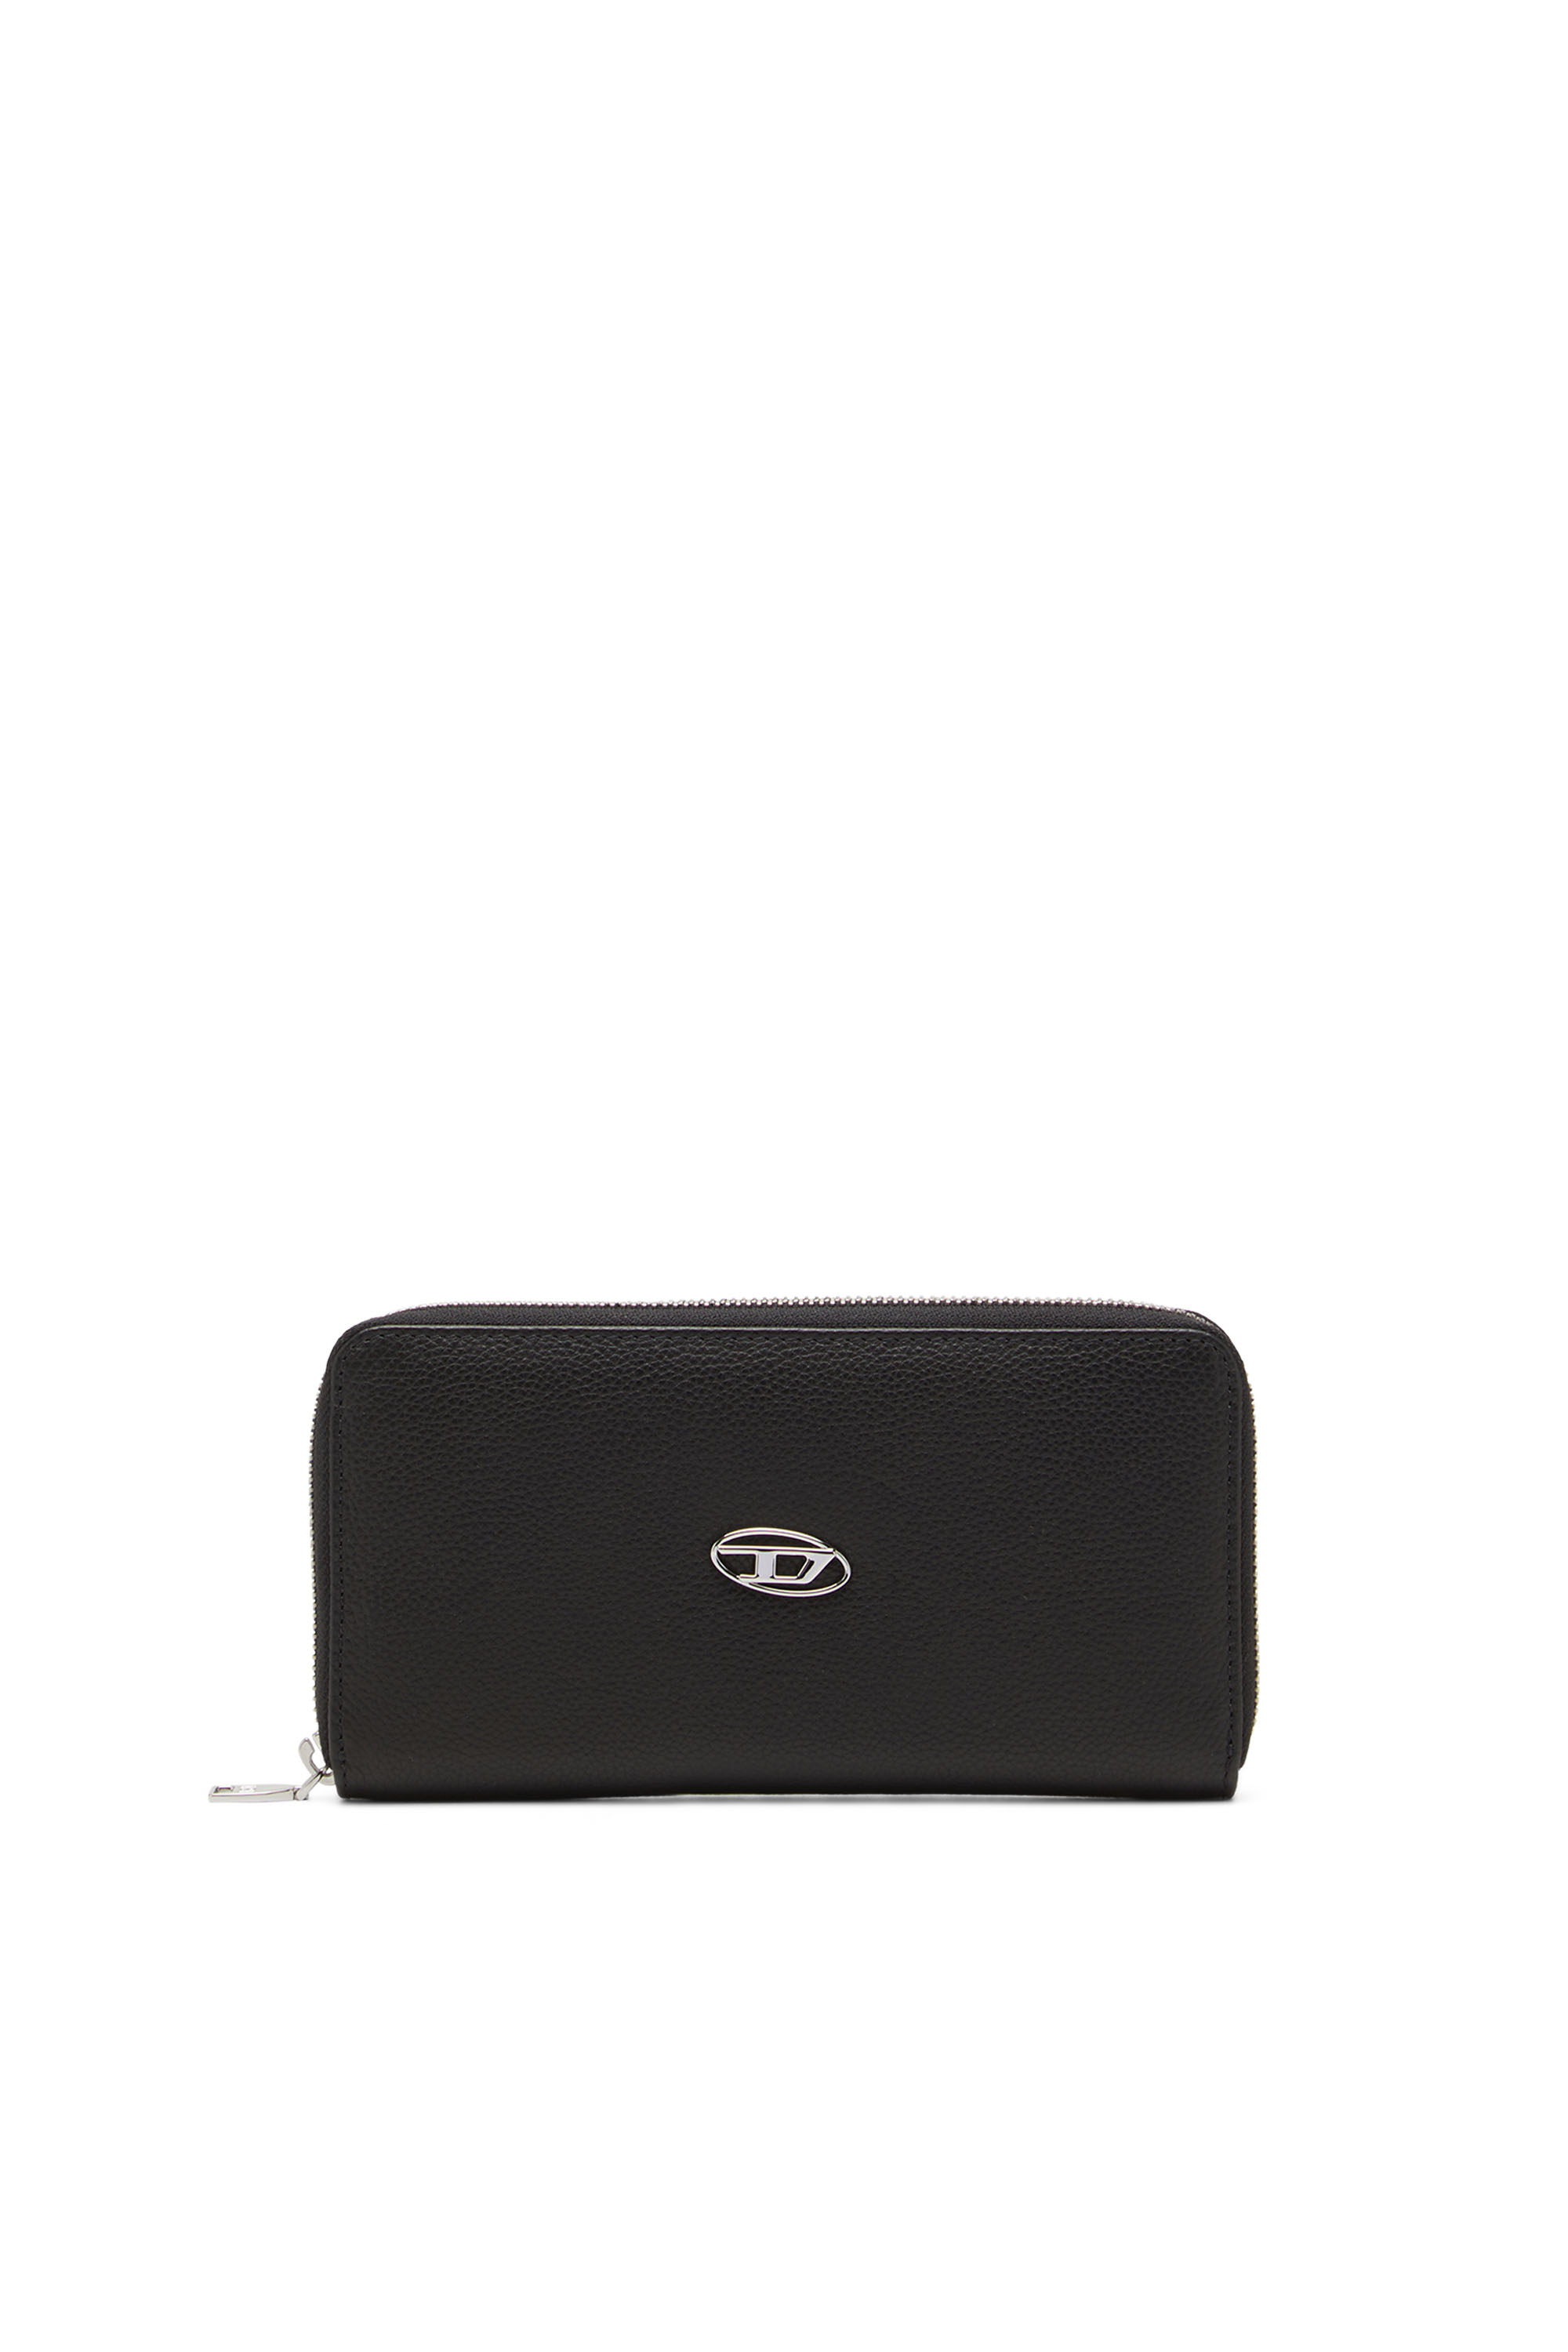 Diesel Wallet - HISSU EVO GARNET wallet black